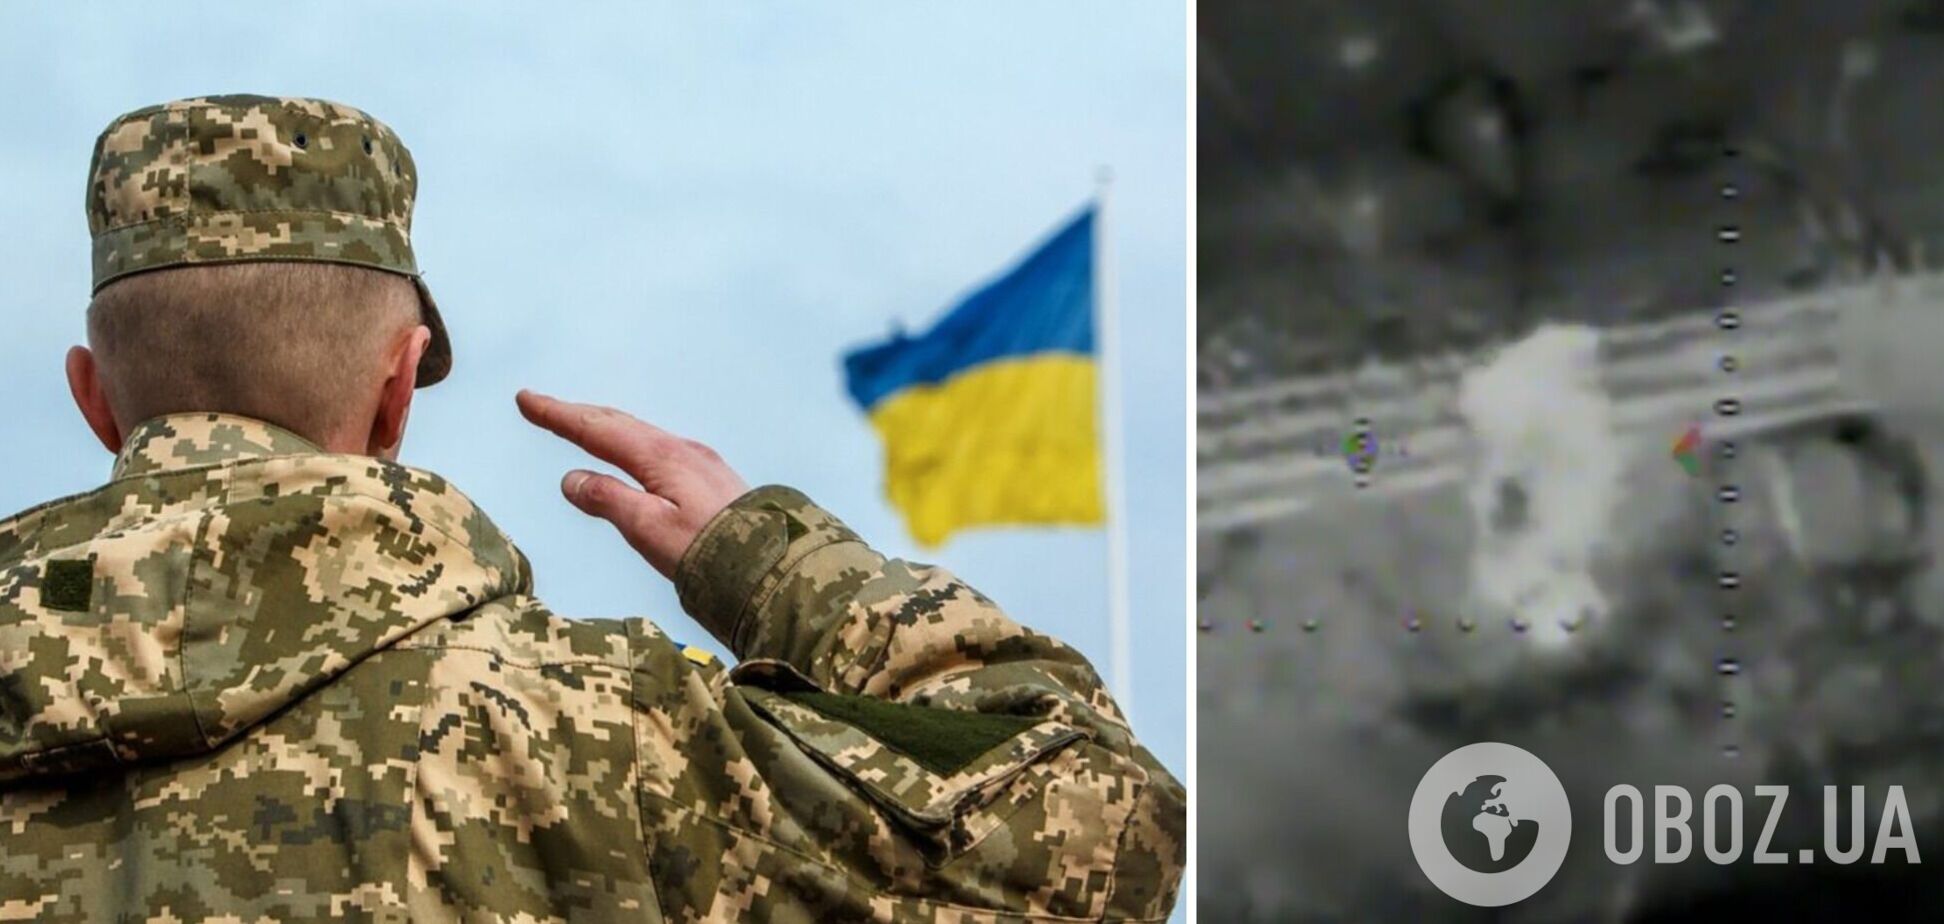 'Подарунок' прилетів точно в ціль: українські захисники за допомогою дрона знищили ворожу техніку. Відео